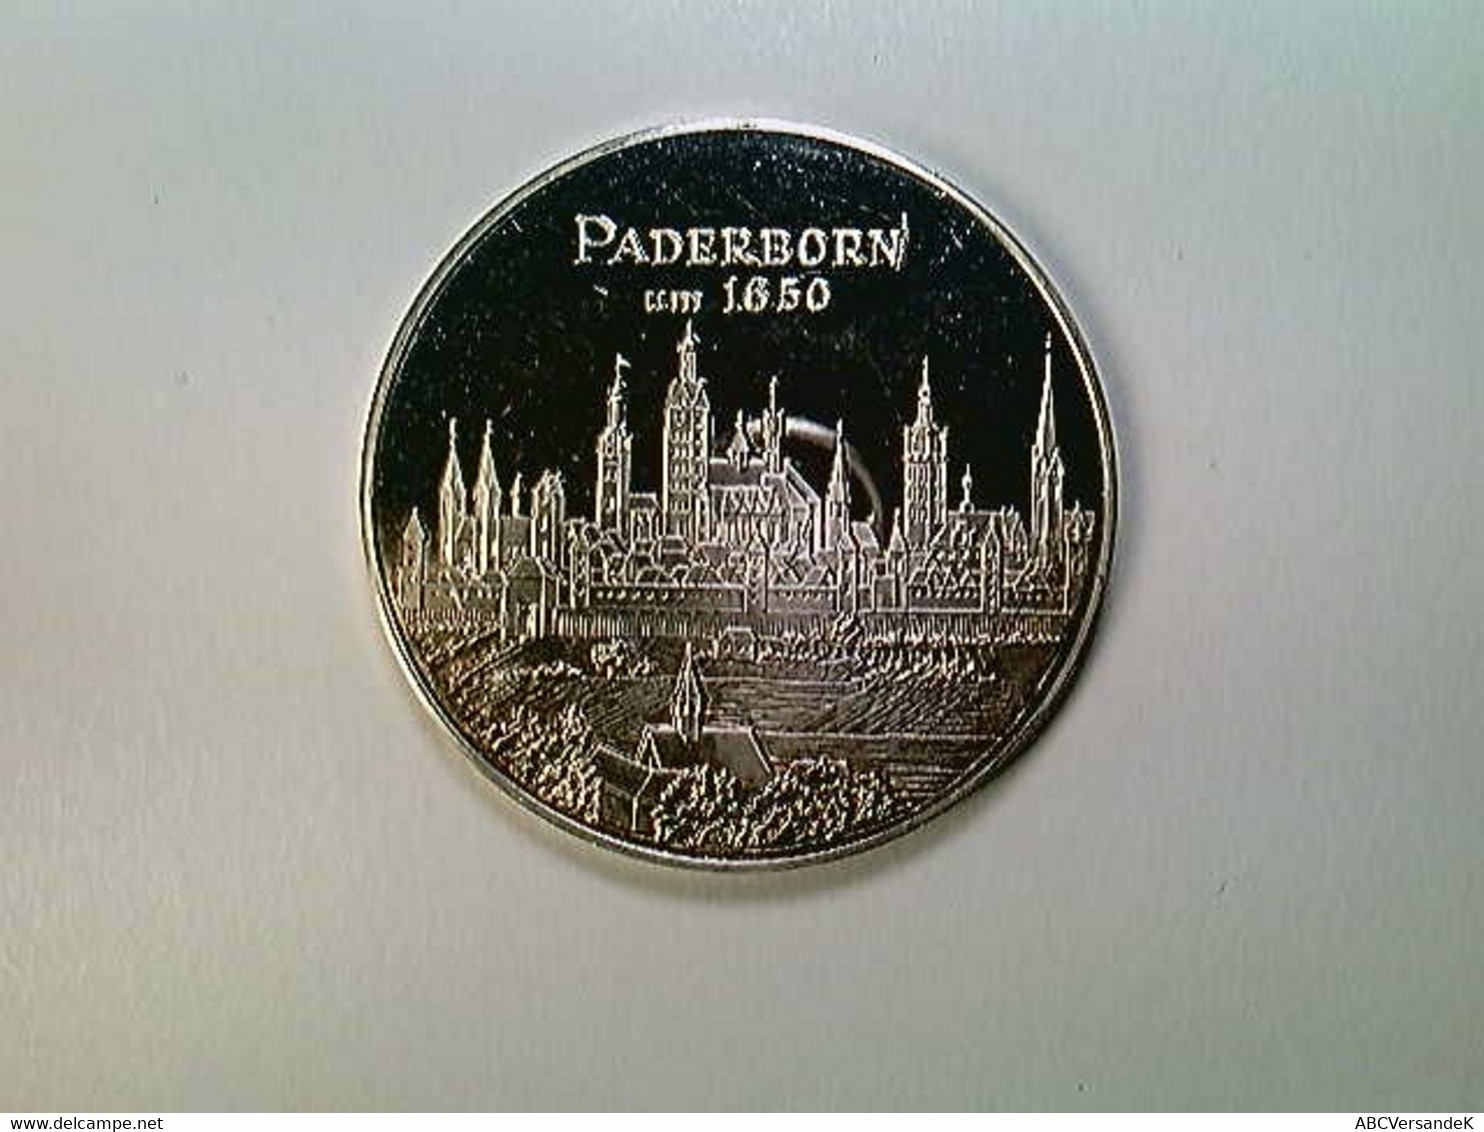 Medaille Paderborn 1650 Nach Merian, 40 Mm, 30 Gr., Silber, SELTEN! - Numismatik